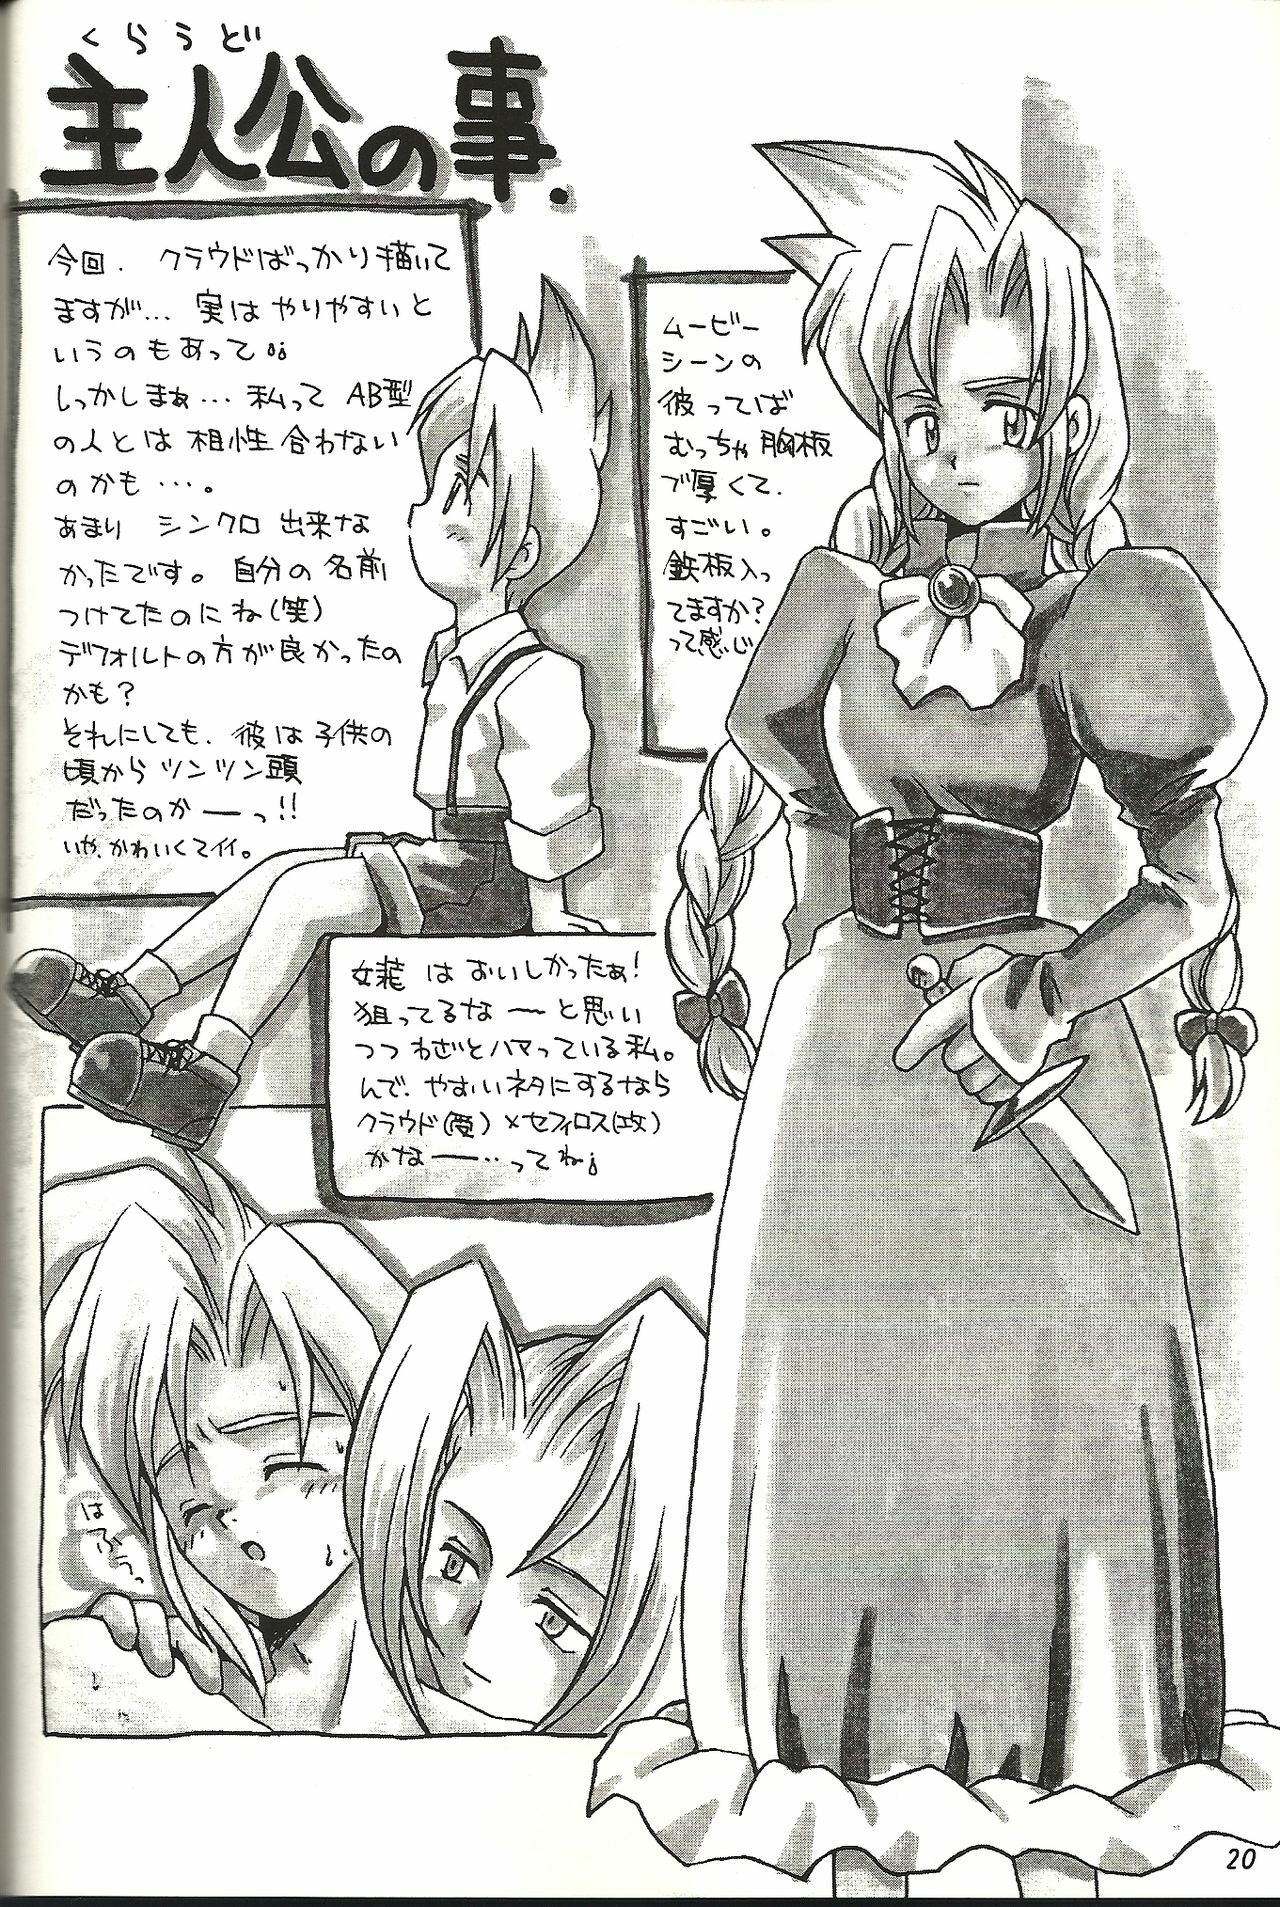 (CR21) [Bakuhatsu BRS. (B.Tarou)] Renai Shiyou (Final Fantasy VII) page 20 full